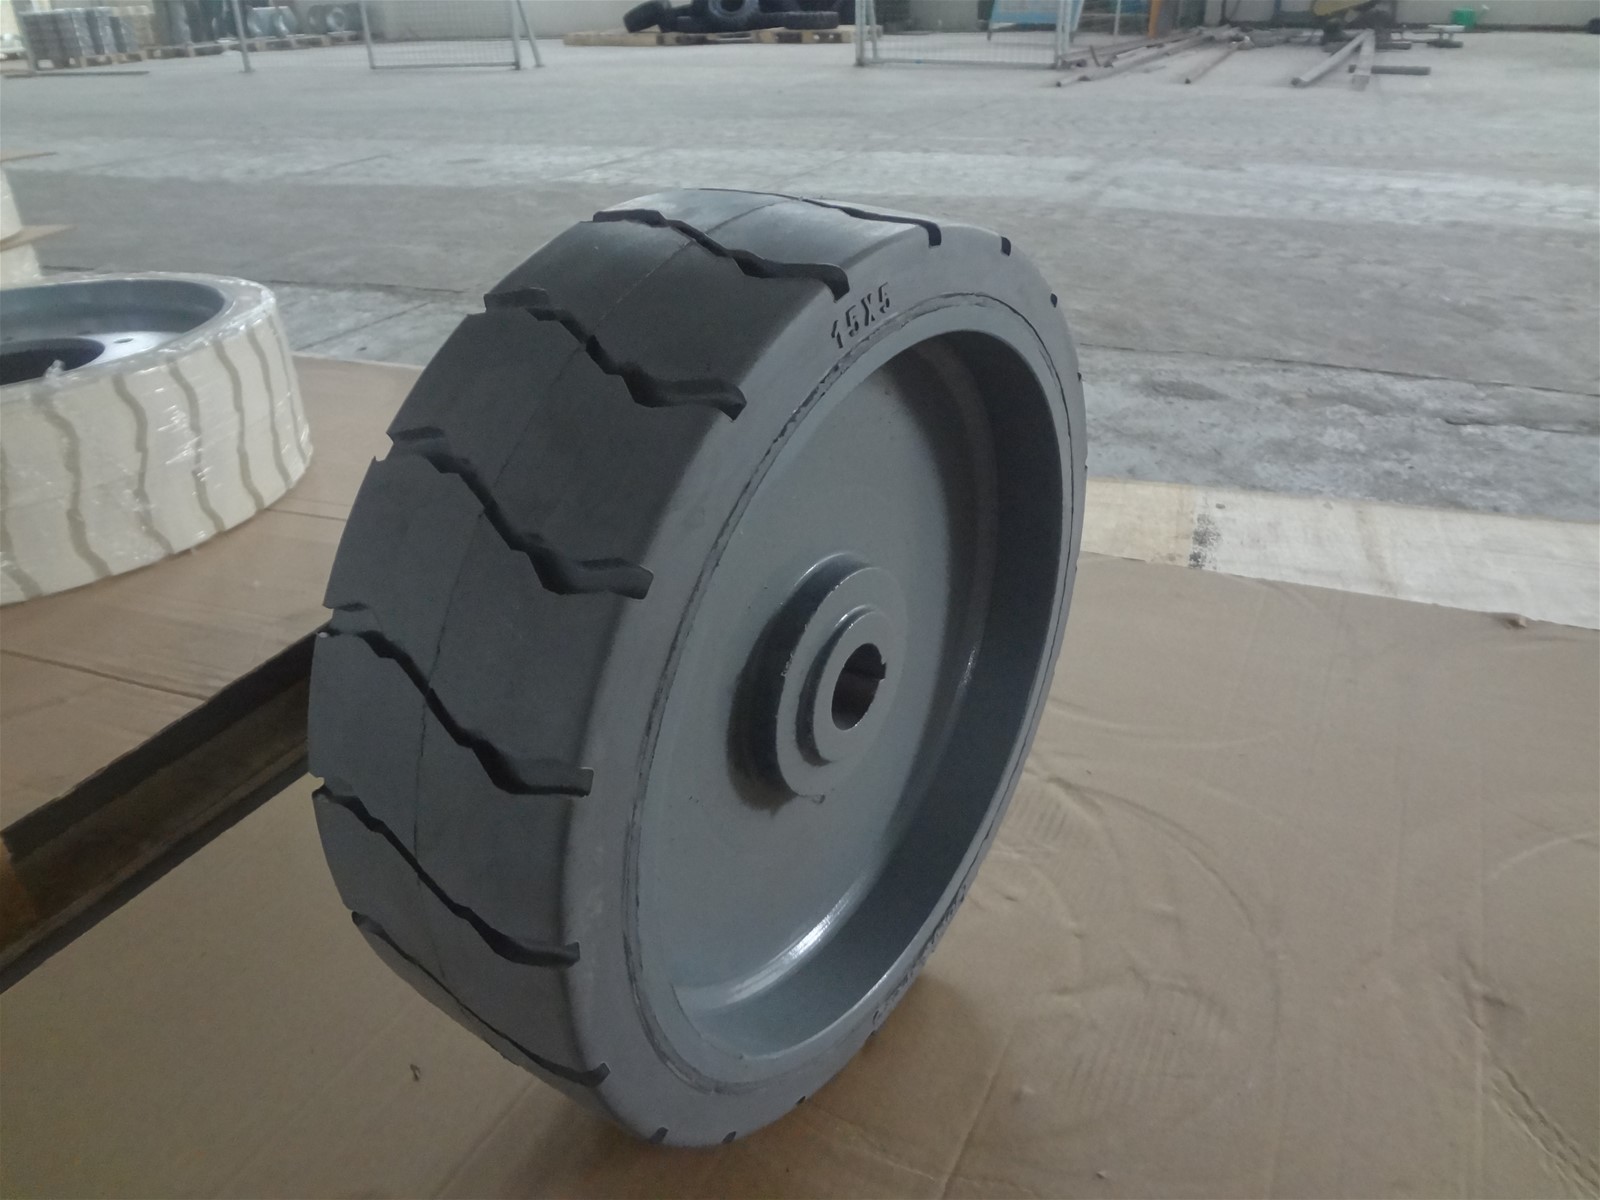 GENIE GS3246 SCISSOR LIFT MOULD ON WHEEL 15 x5 x 11 solid nonmarking tire